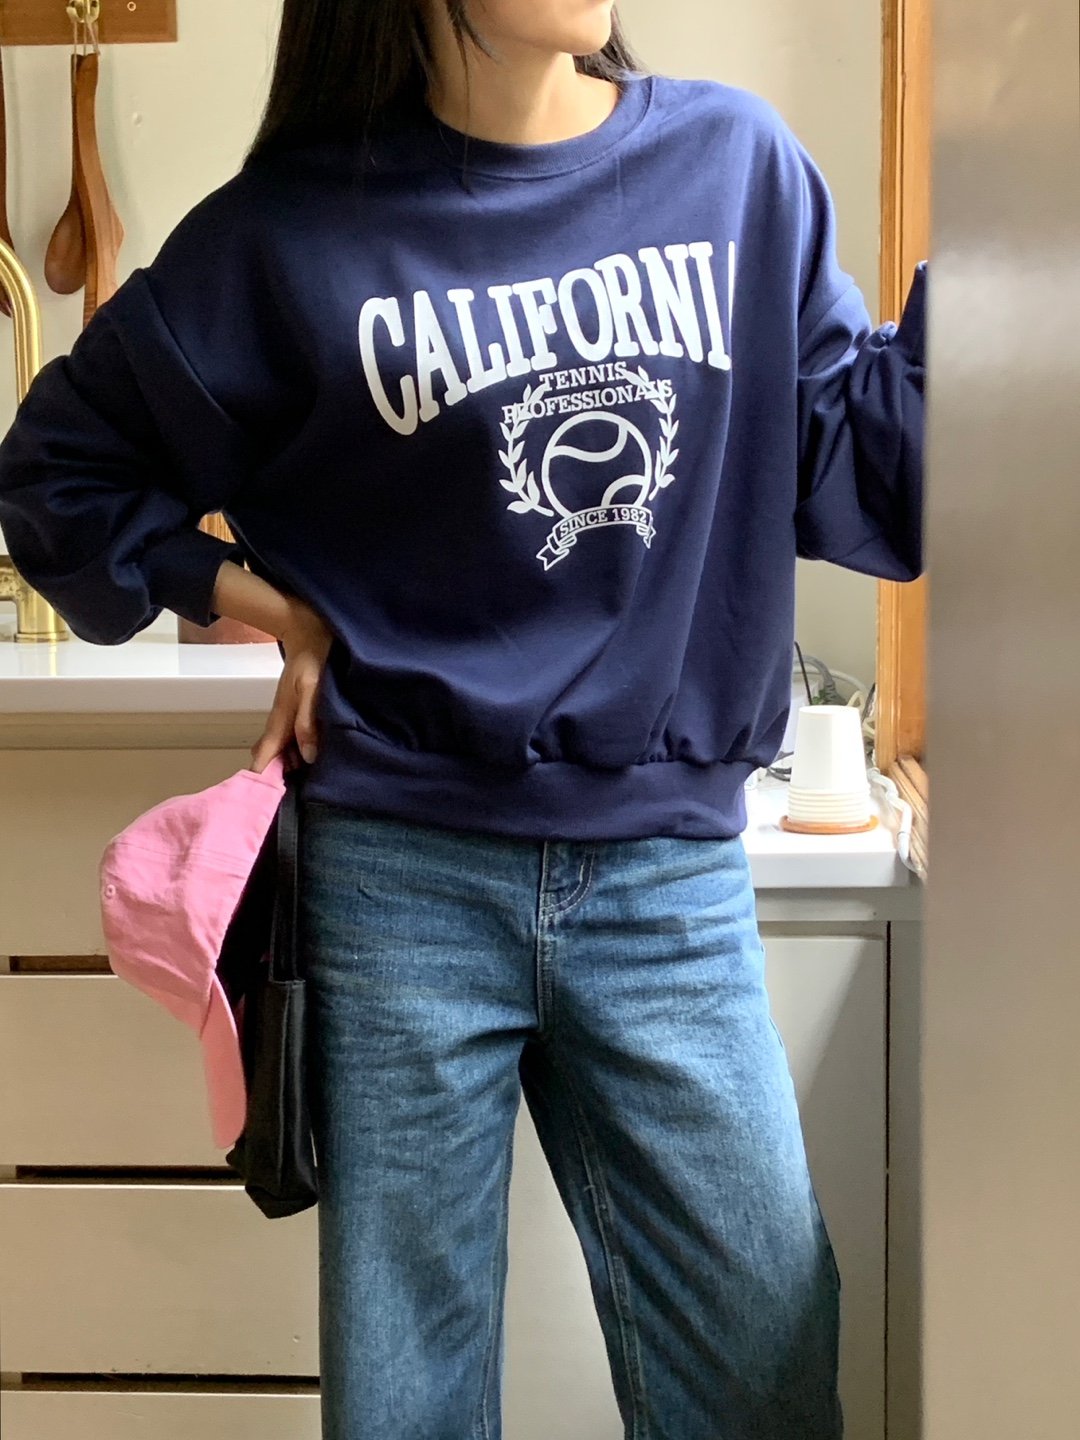 California tennisball Sweatshirts